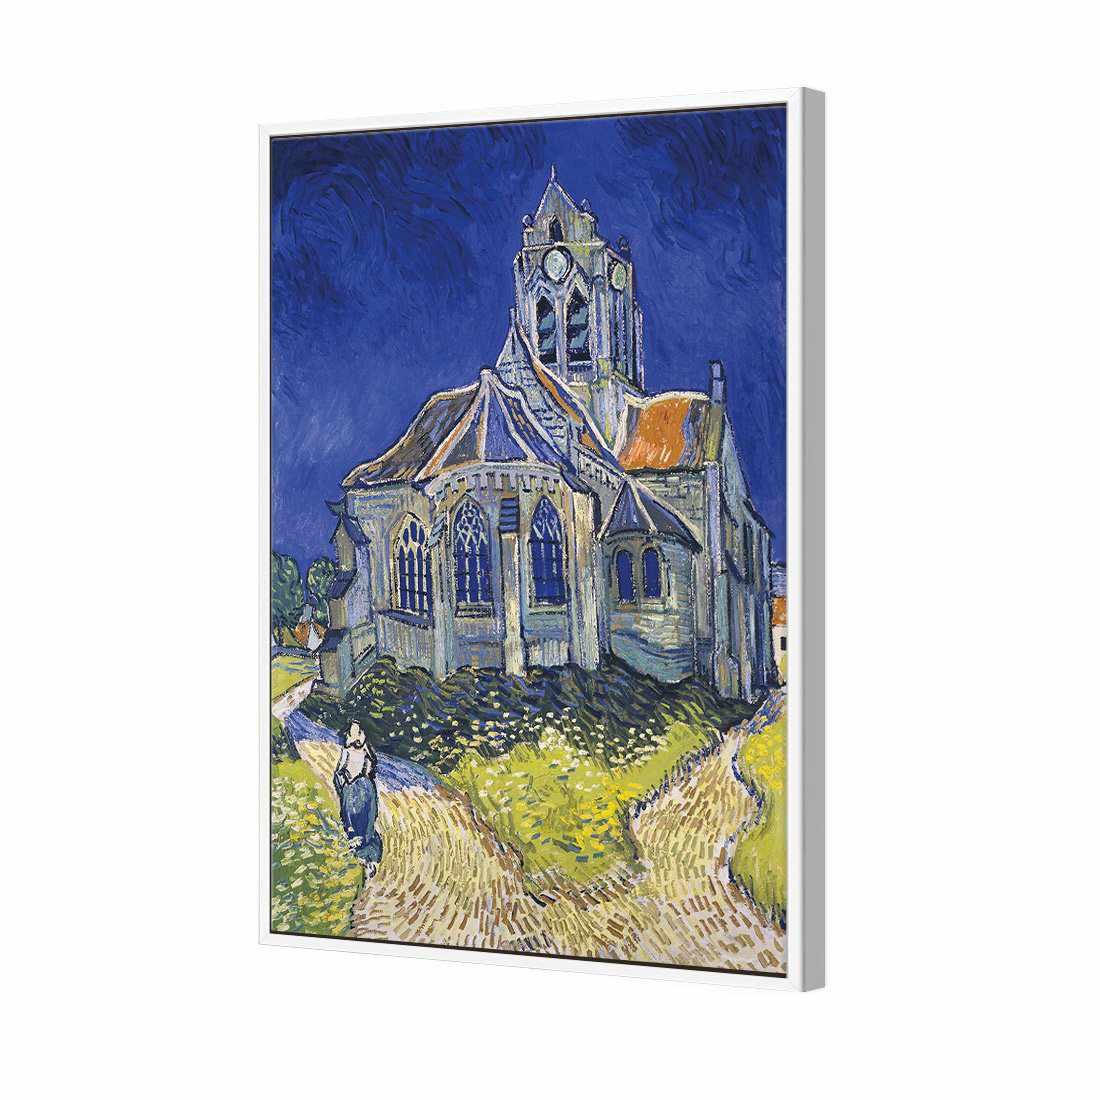 The Church At Auvers - Van Gogh Canvas Art-Canvas-Wall Art Designs-45x30cm-Canvas - White Frame-Wall Art Designs